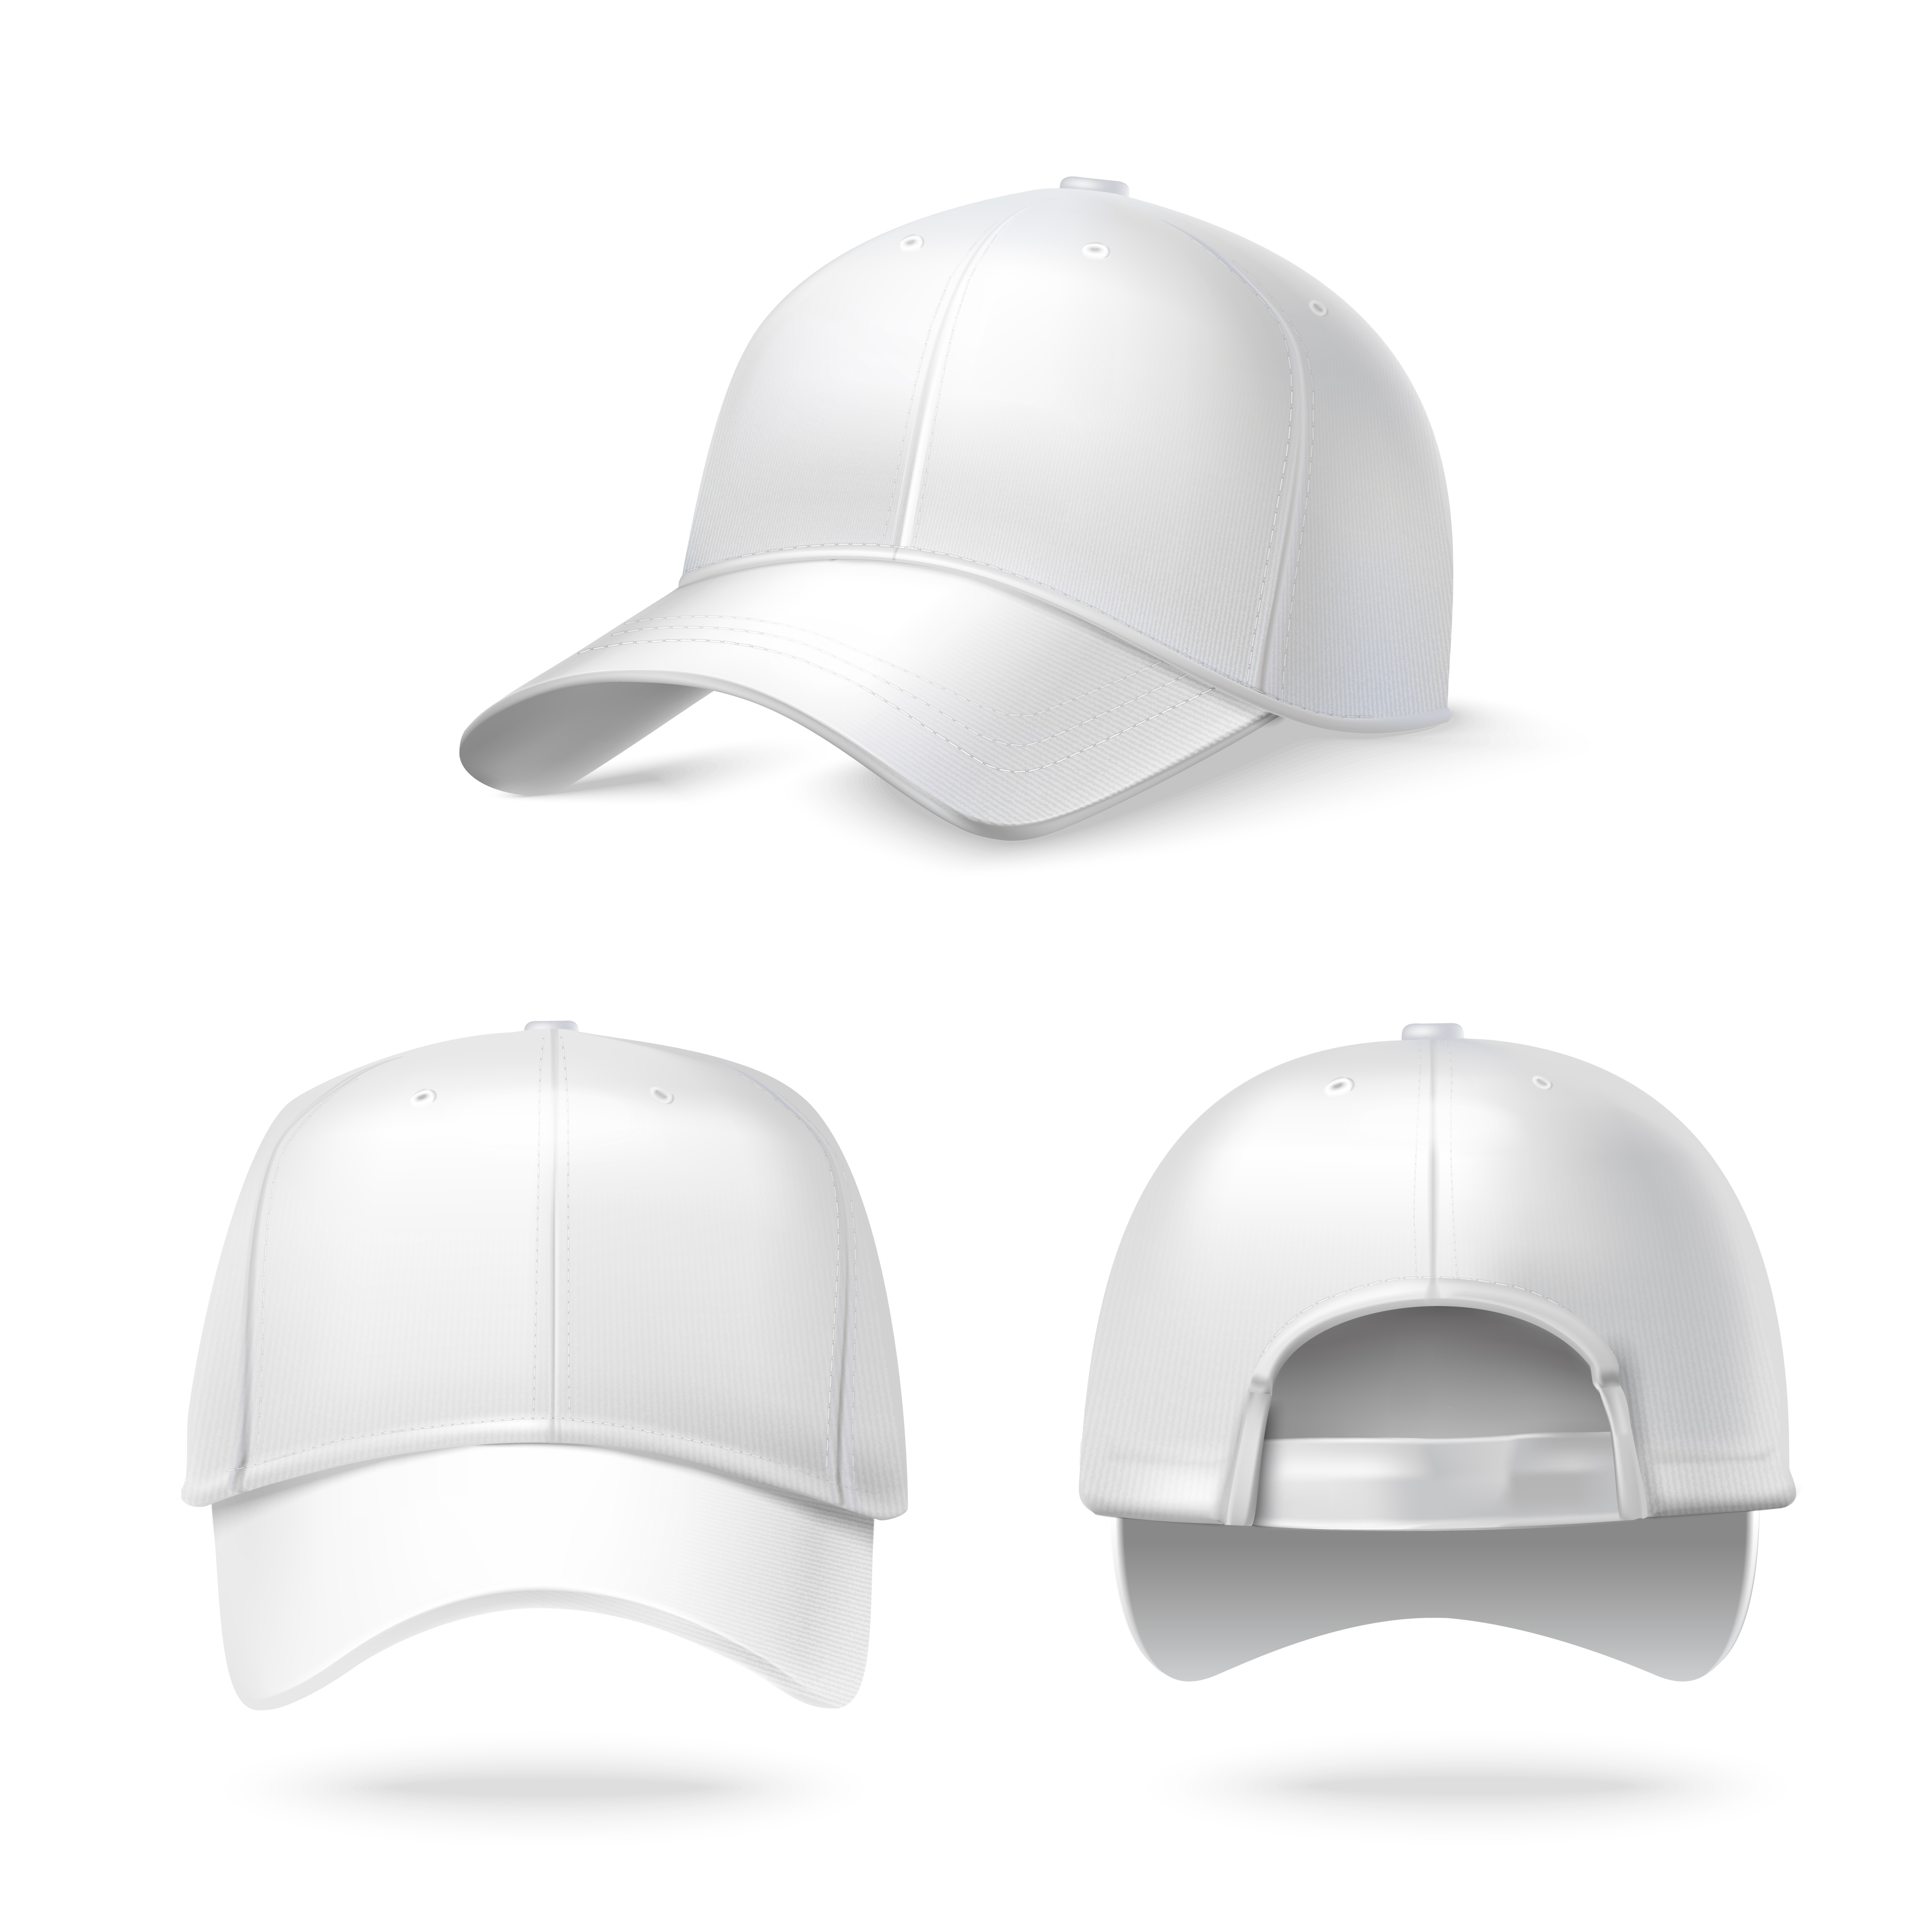 Realistic baseball cap - Download Free Vectors, Clipart ...